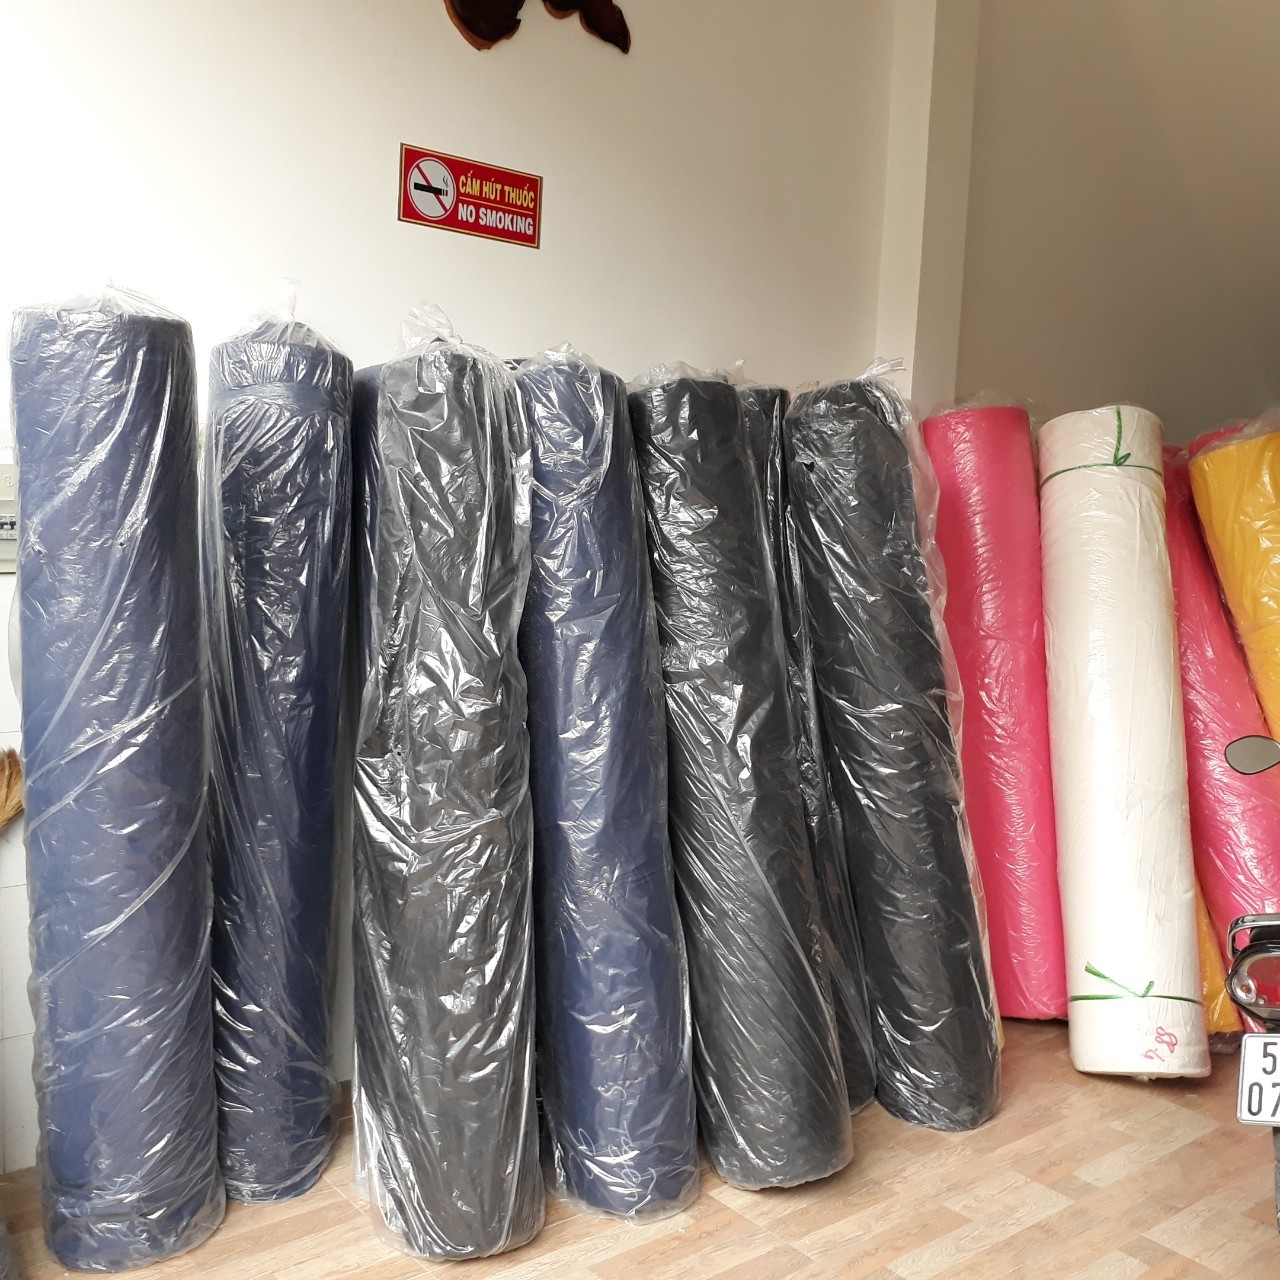 vaicanvasgiare - Phụ kiện thời trang: Vải bố giá rẻ dùng sản xuất balo – túi vải bố tại STP Kho-vai-bo-stp